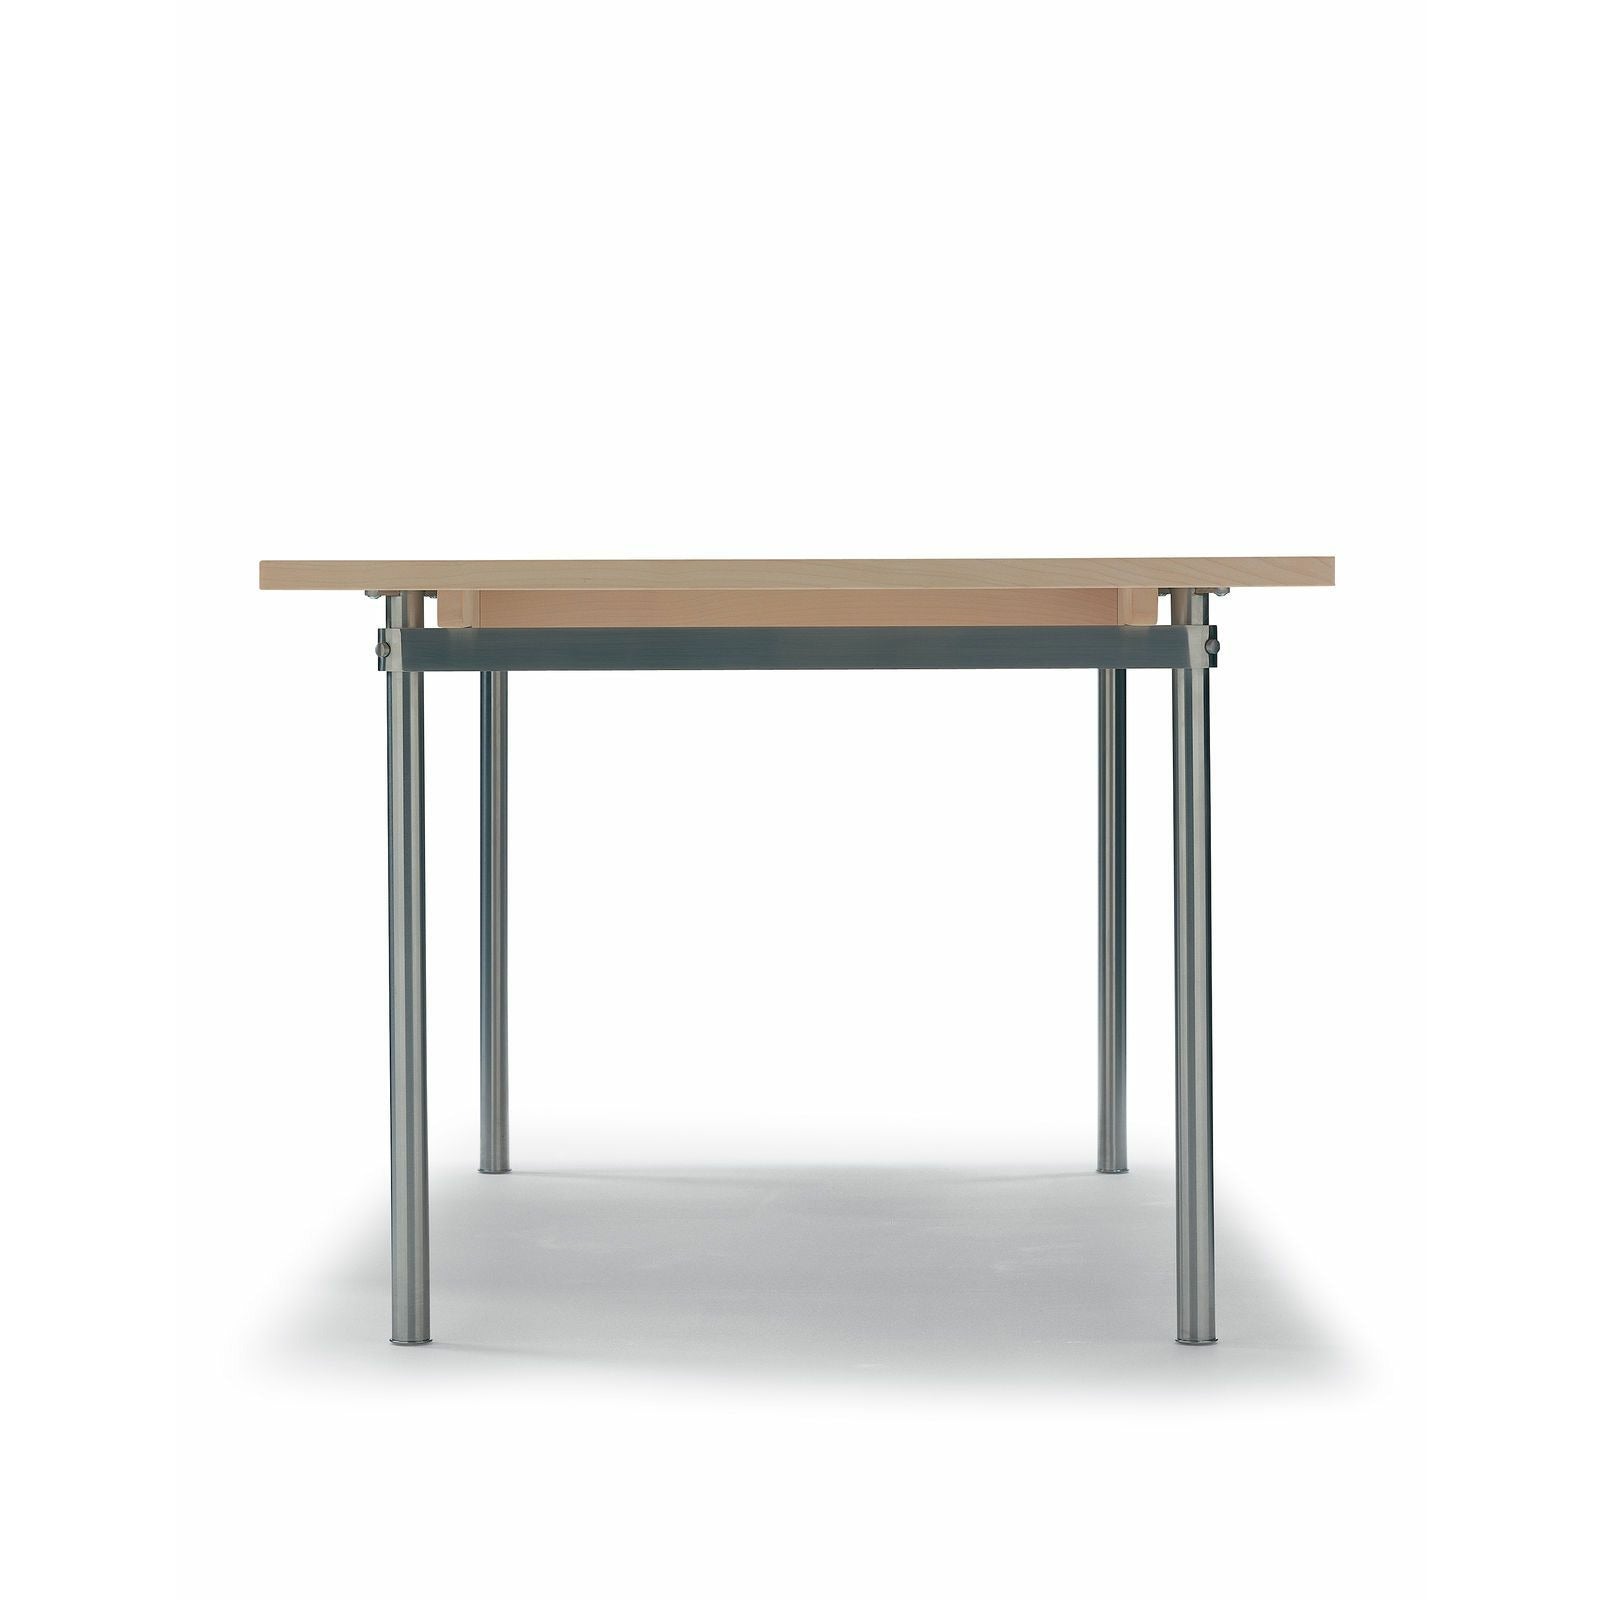 Carl Hansen CH322 matbord inkl. 2 Ytterligare plattor, stål/oljad ek